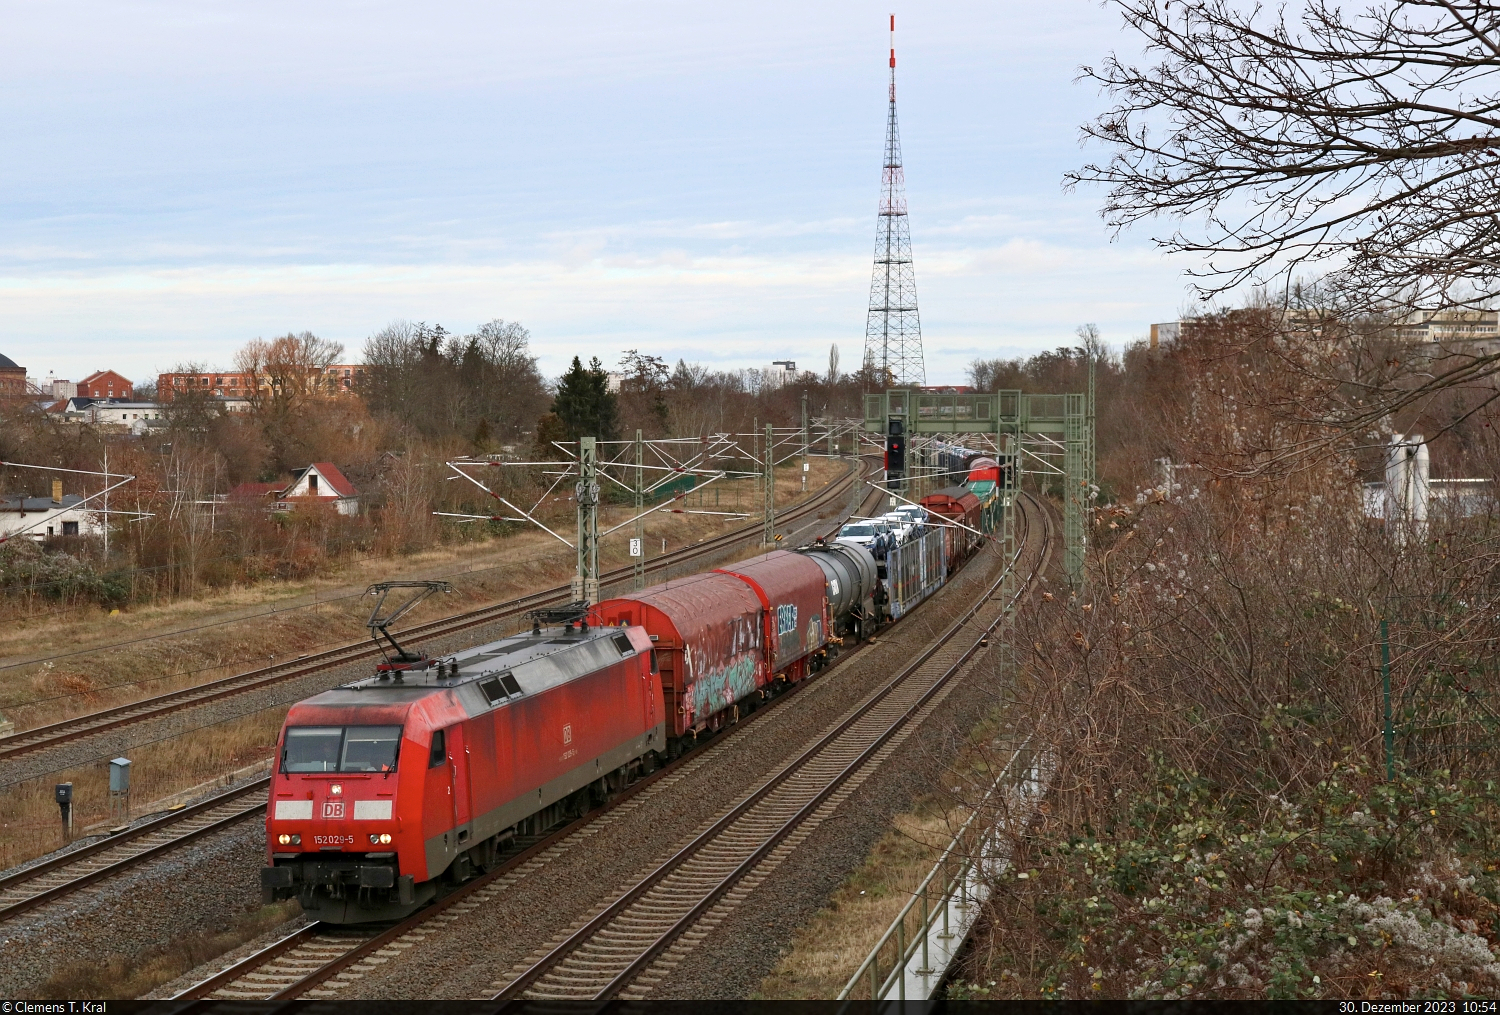 EZ mit 152 029-5 (Siemens ES64F) unterwegs in Leipzig-Connewitz Richtung Böhlen(Leipzig).
Fotografiert von einer Fußgängerbrücke.

🧰 DB Cargo
🕓 30.12.2023 | 10:54 Uhr